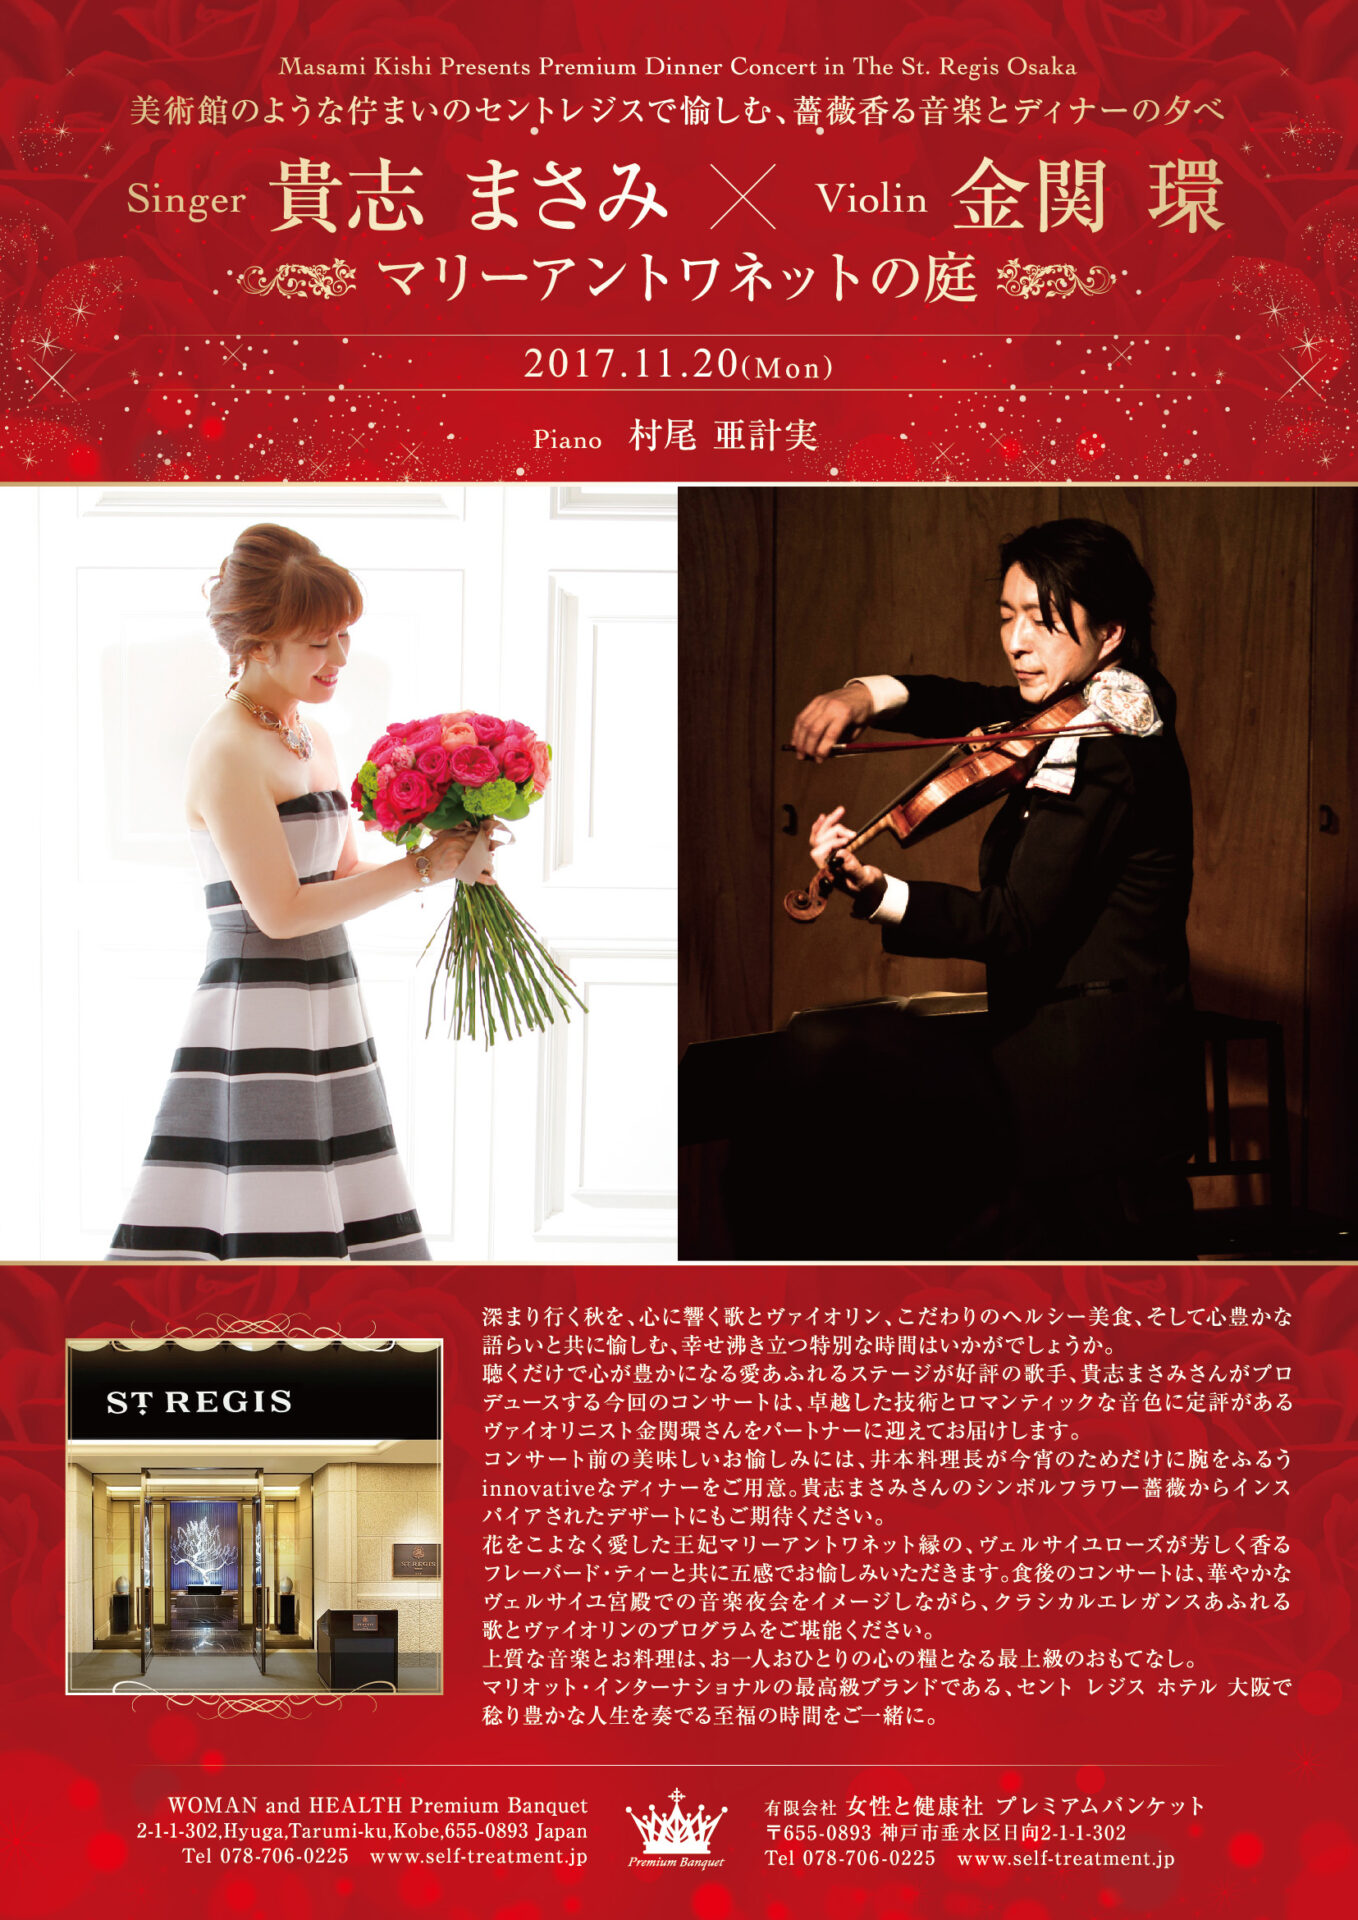 Featured image for “Premium Dinner Concert in The St. Regis Osaka 美術館のような佇まいのセントレジスで愉しむ、薔薇香る音楽とディナーの夕べ マリーアントワネットの庭”